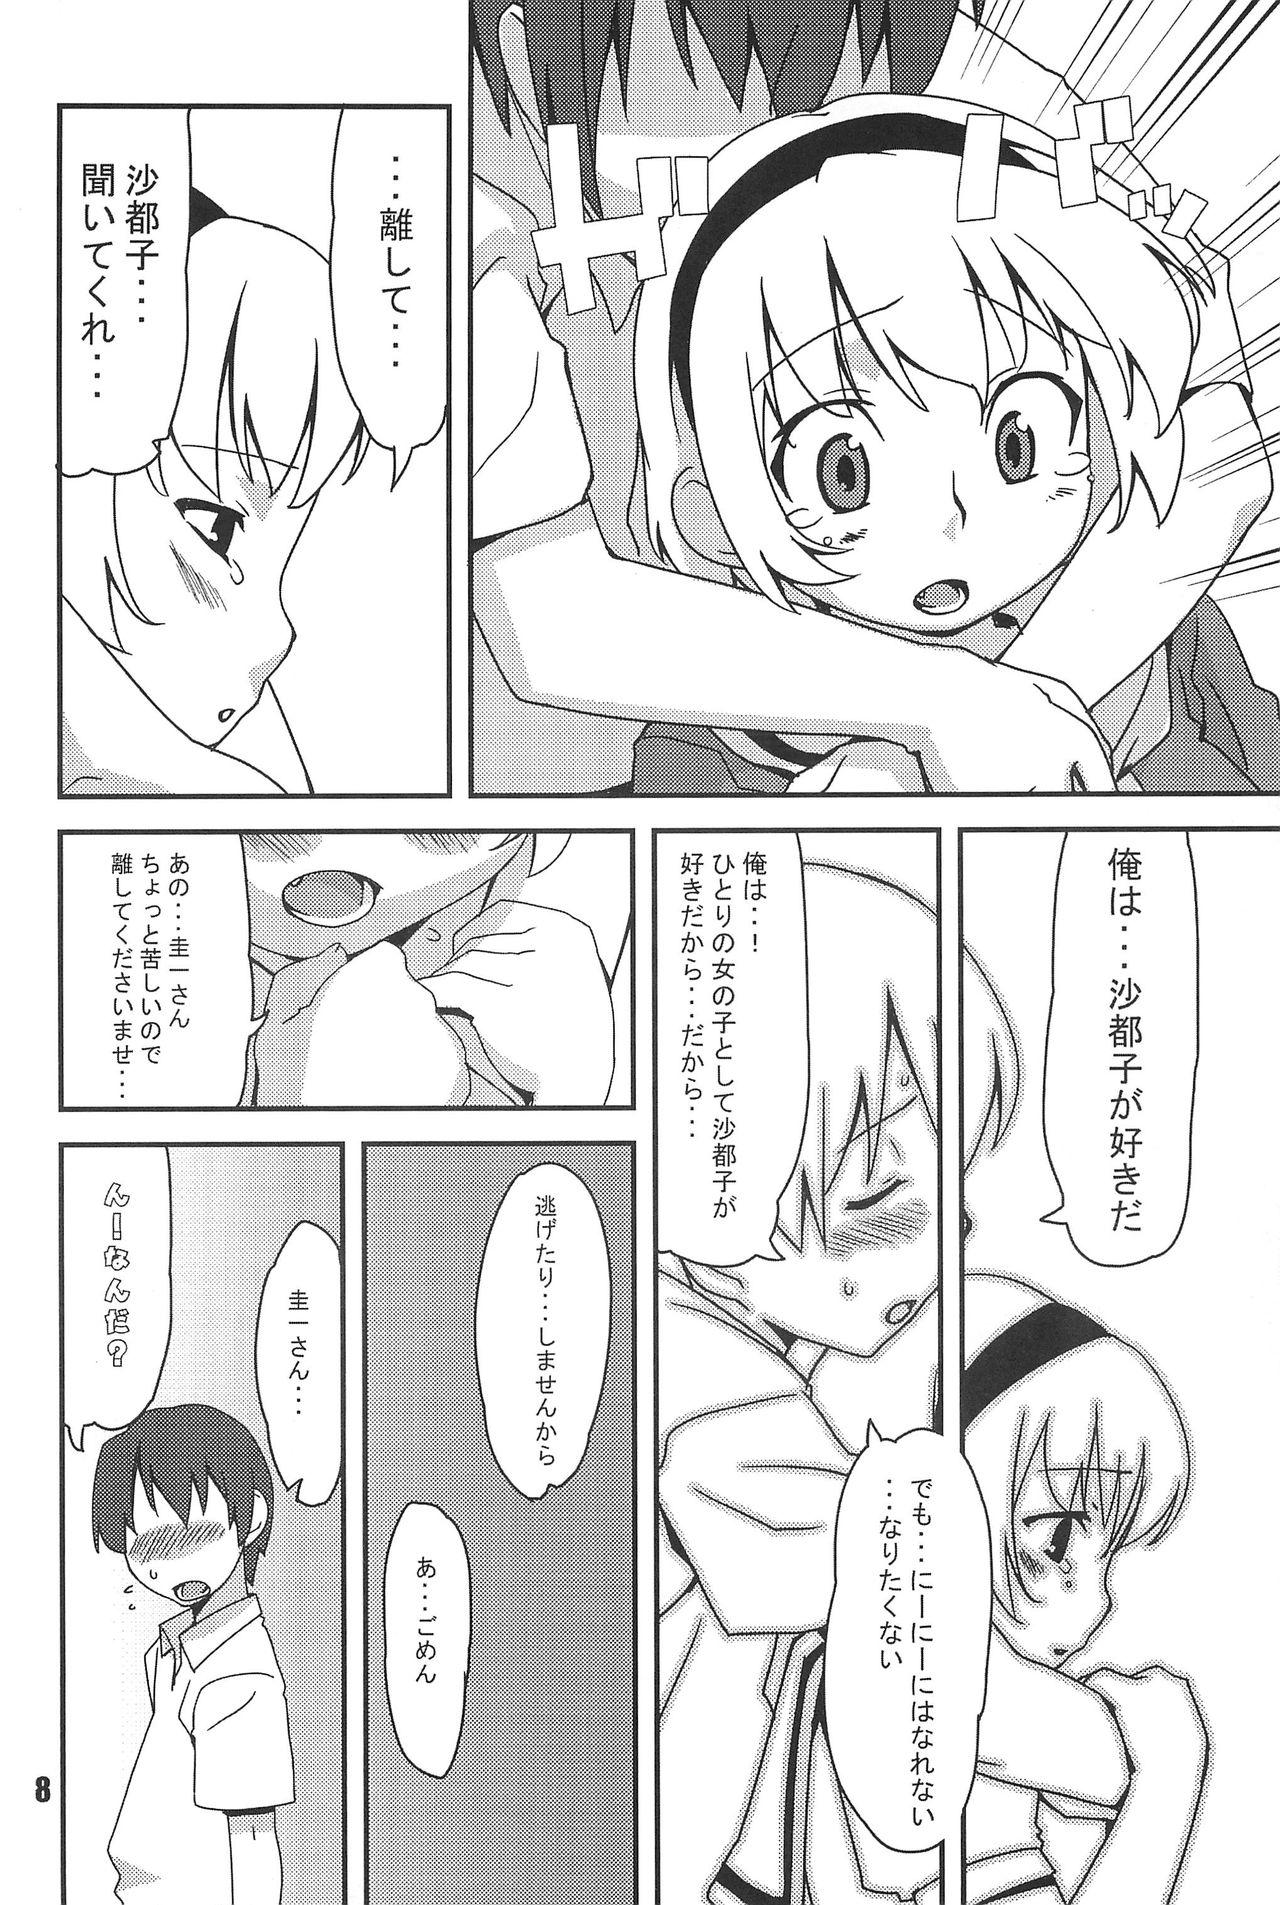 Fishnets Burokko Flower - Higurashi no naku koro ni 3some - Page 8